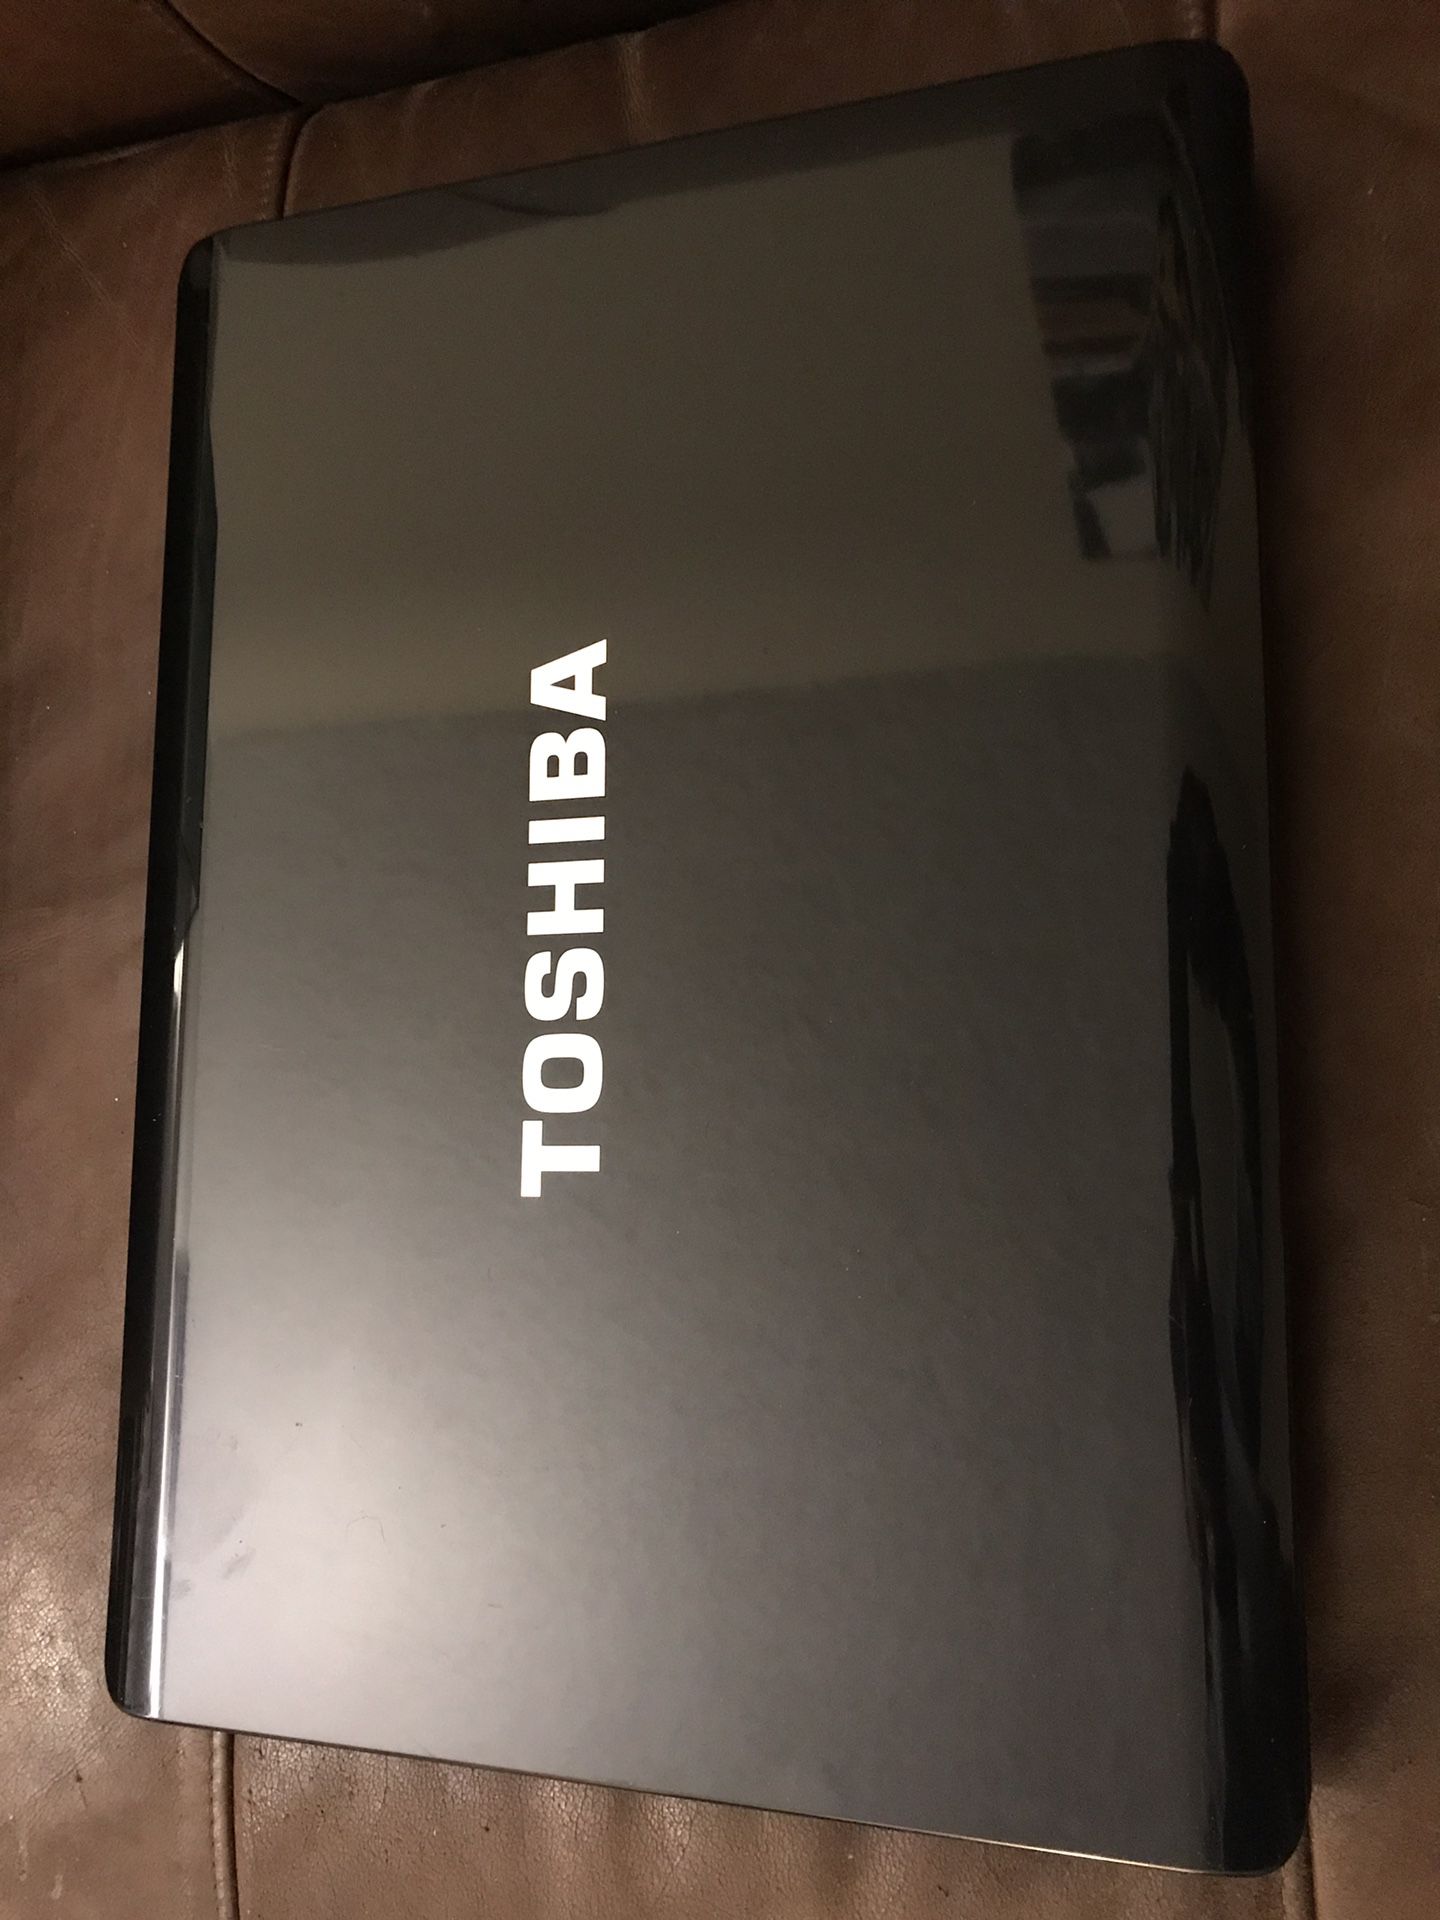 Toshiba Satellite A215-S4747 Laptop